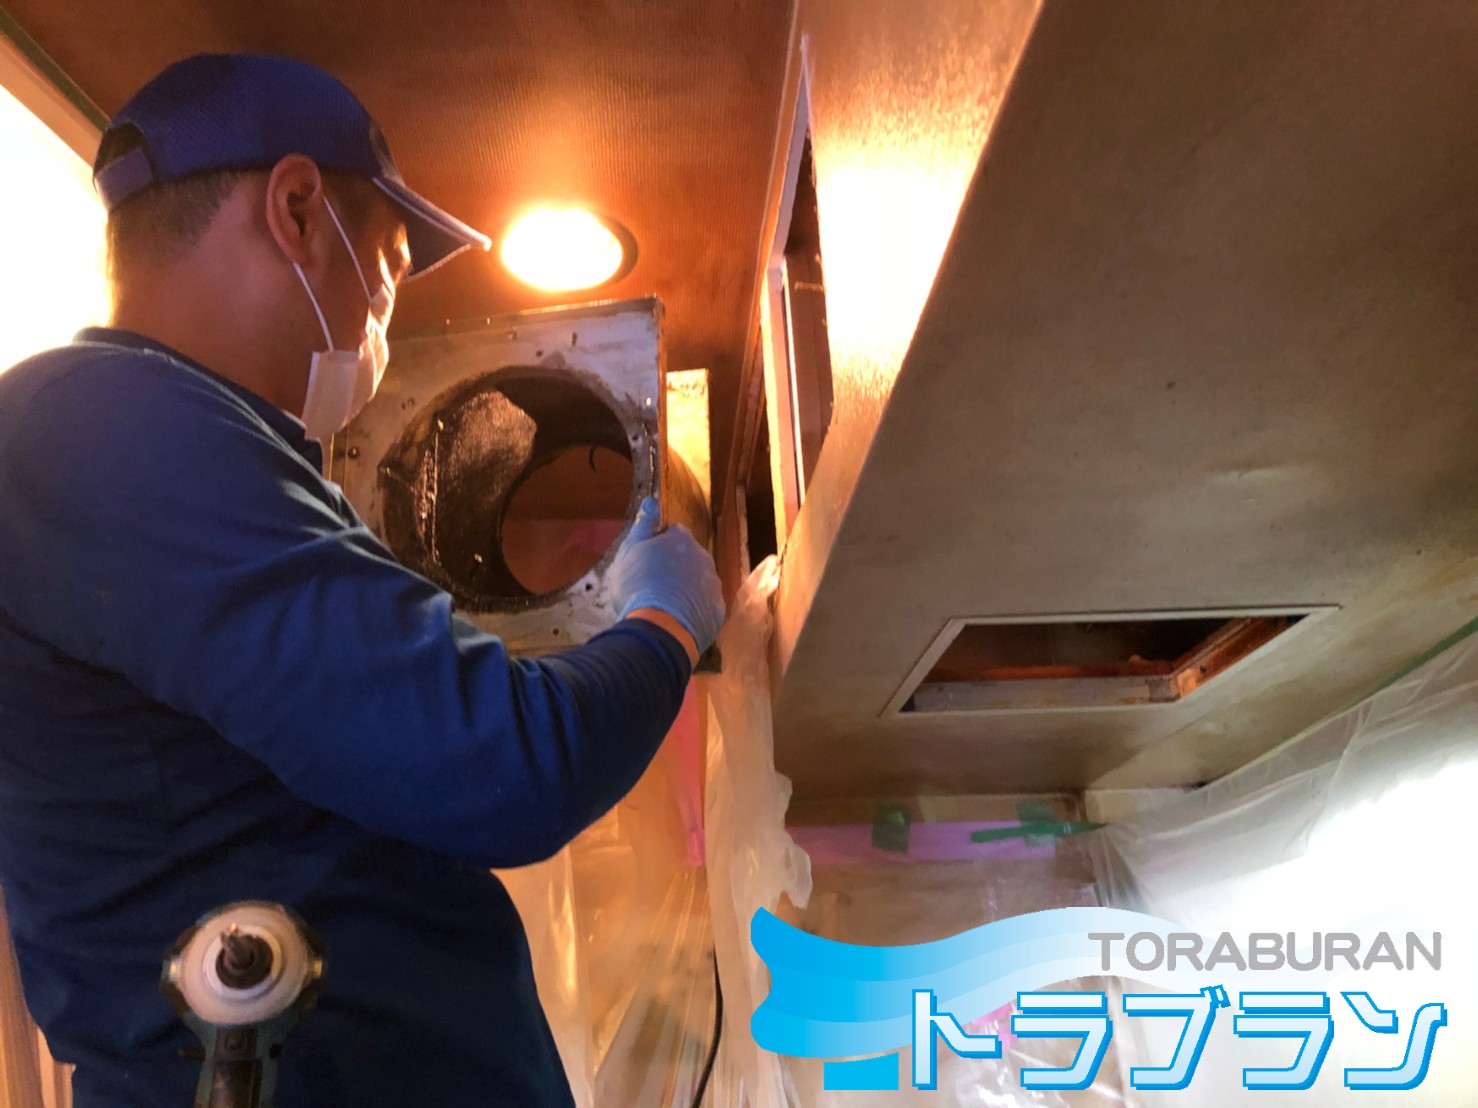 店舗 換気扇 清掃 洗浄 コロナ対策 給付金 神戸市 トラブラン